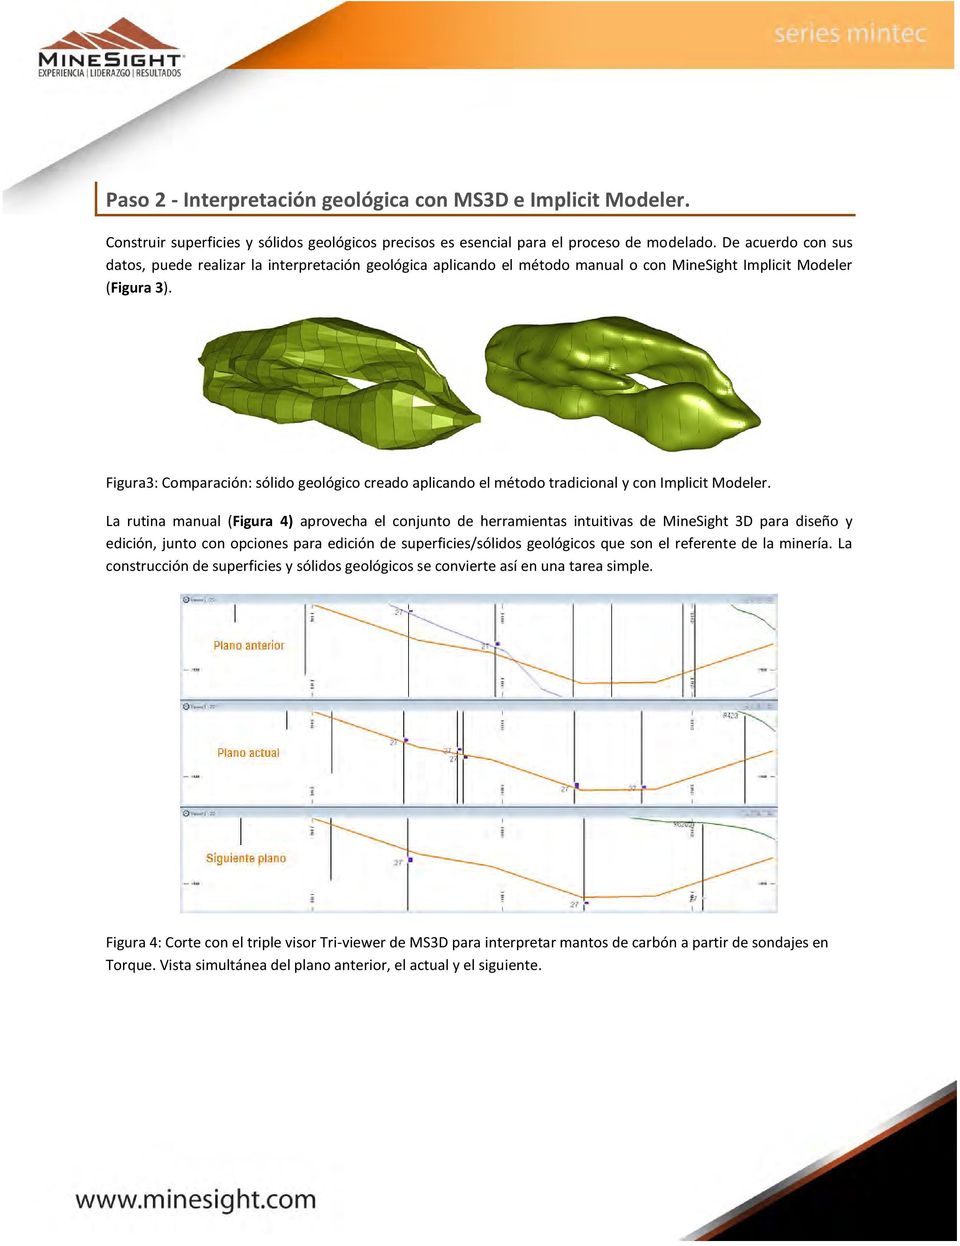 Figura3: Comparación: sólido geológico creado aplicando el método tradicional y con Implicit Modeler.